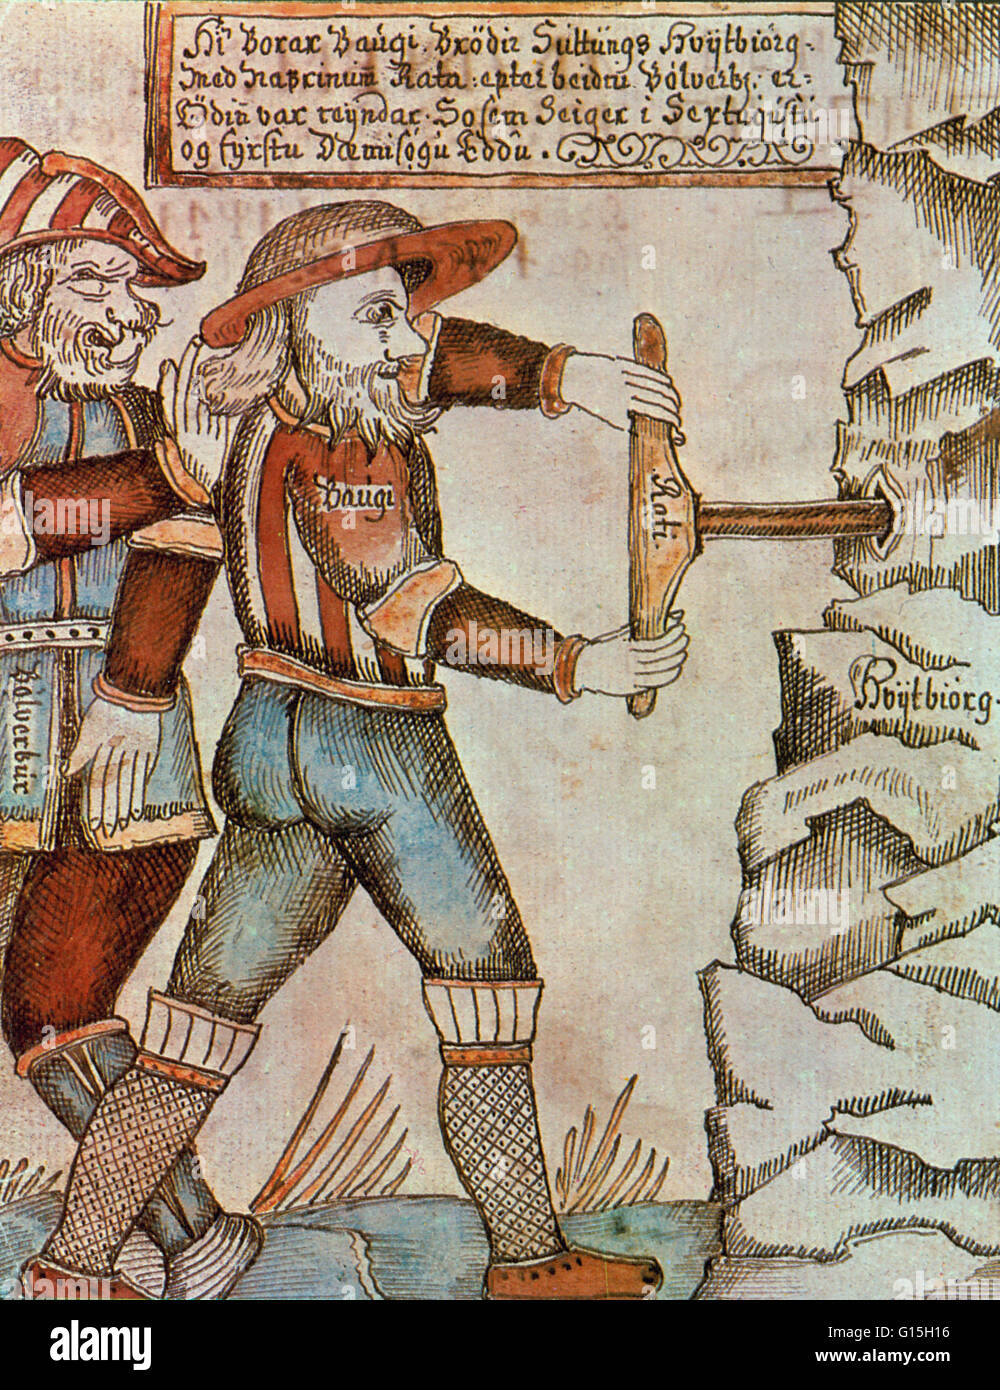 Die altnordischen mythologische Figur Baugi bohrt in einen Berg zu Odin, ein Gott, einen Schluck des darin versteckt 'Mead der Poesie"zu ermöglichen. Illustration aus einer isländischen Handschrift aus dem 18. Jahrhundert. Stockfoto